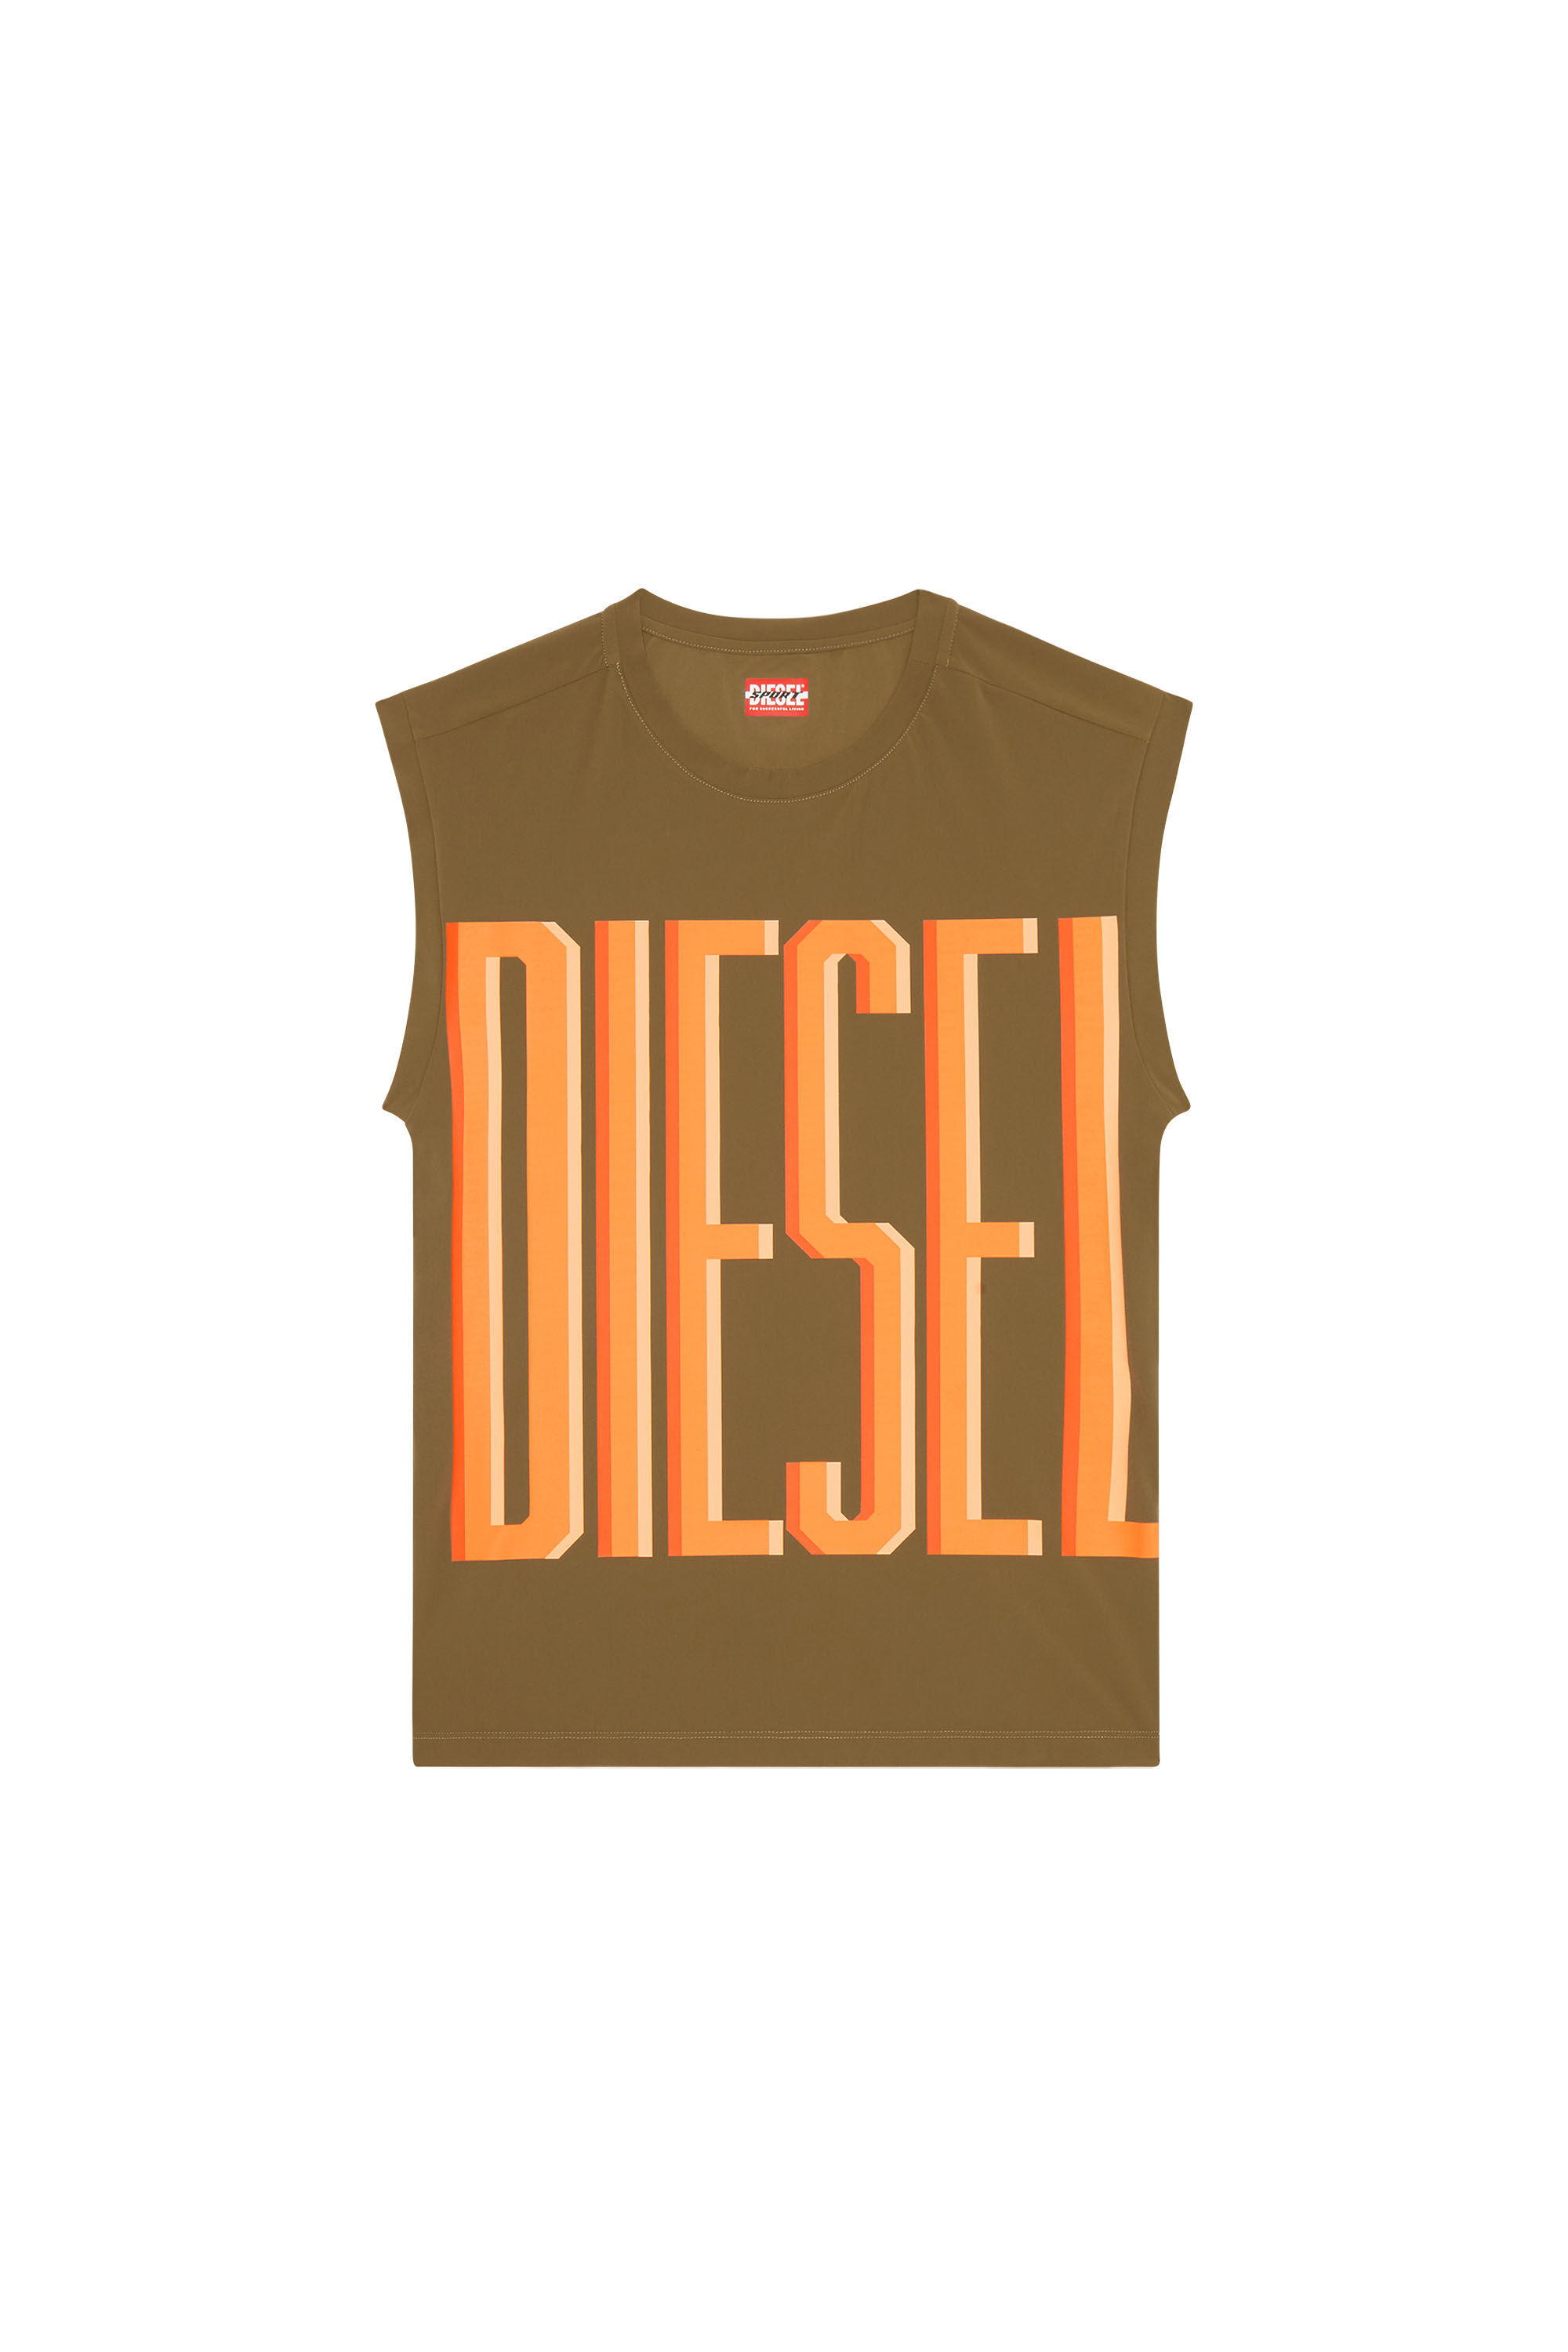 Diesel - AMST-RIDGE-WT40, Brown - Image 2